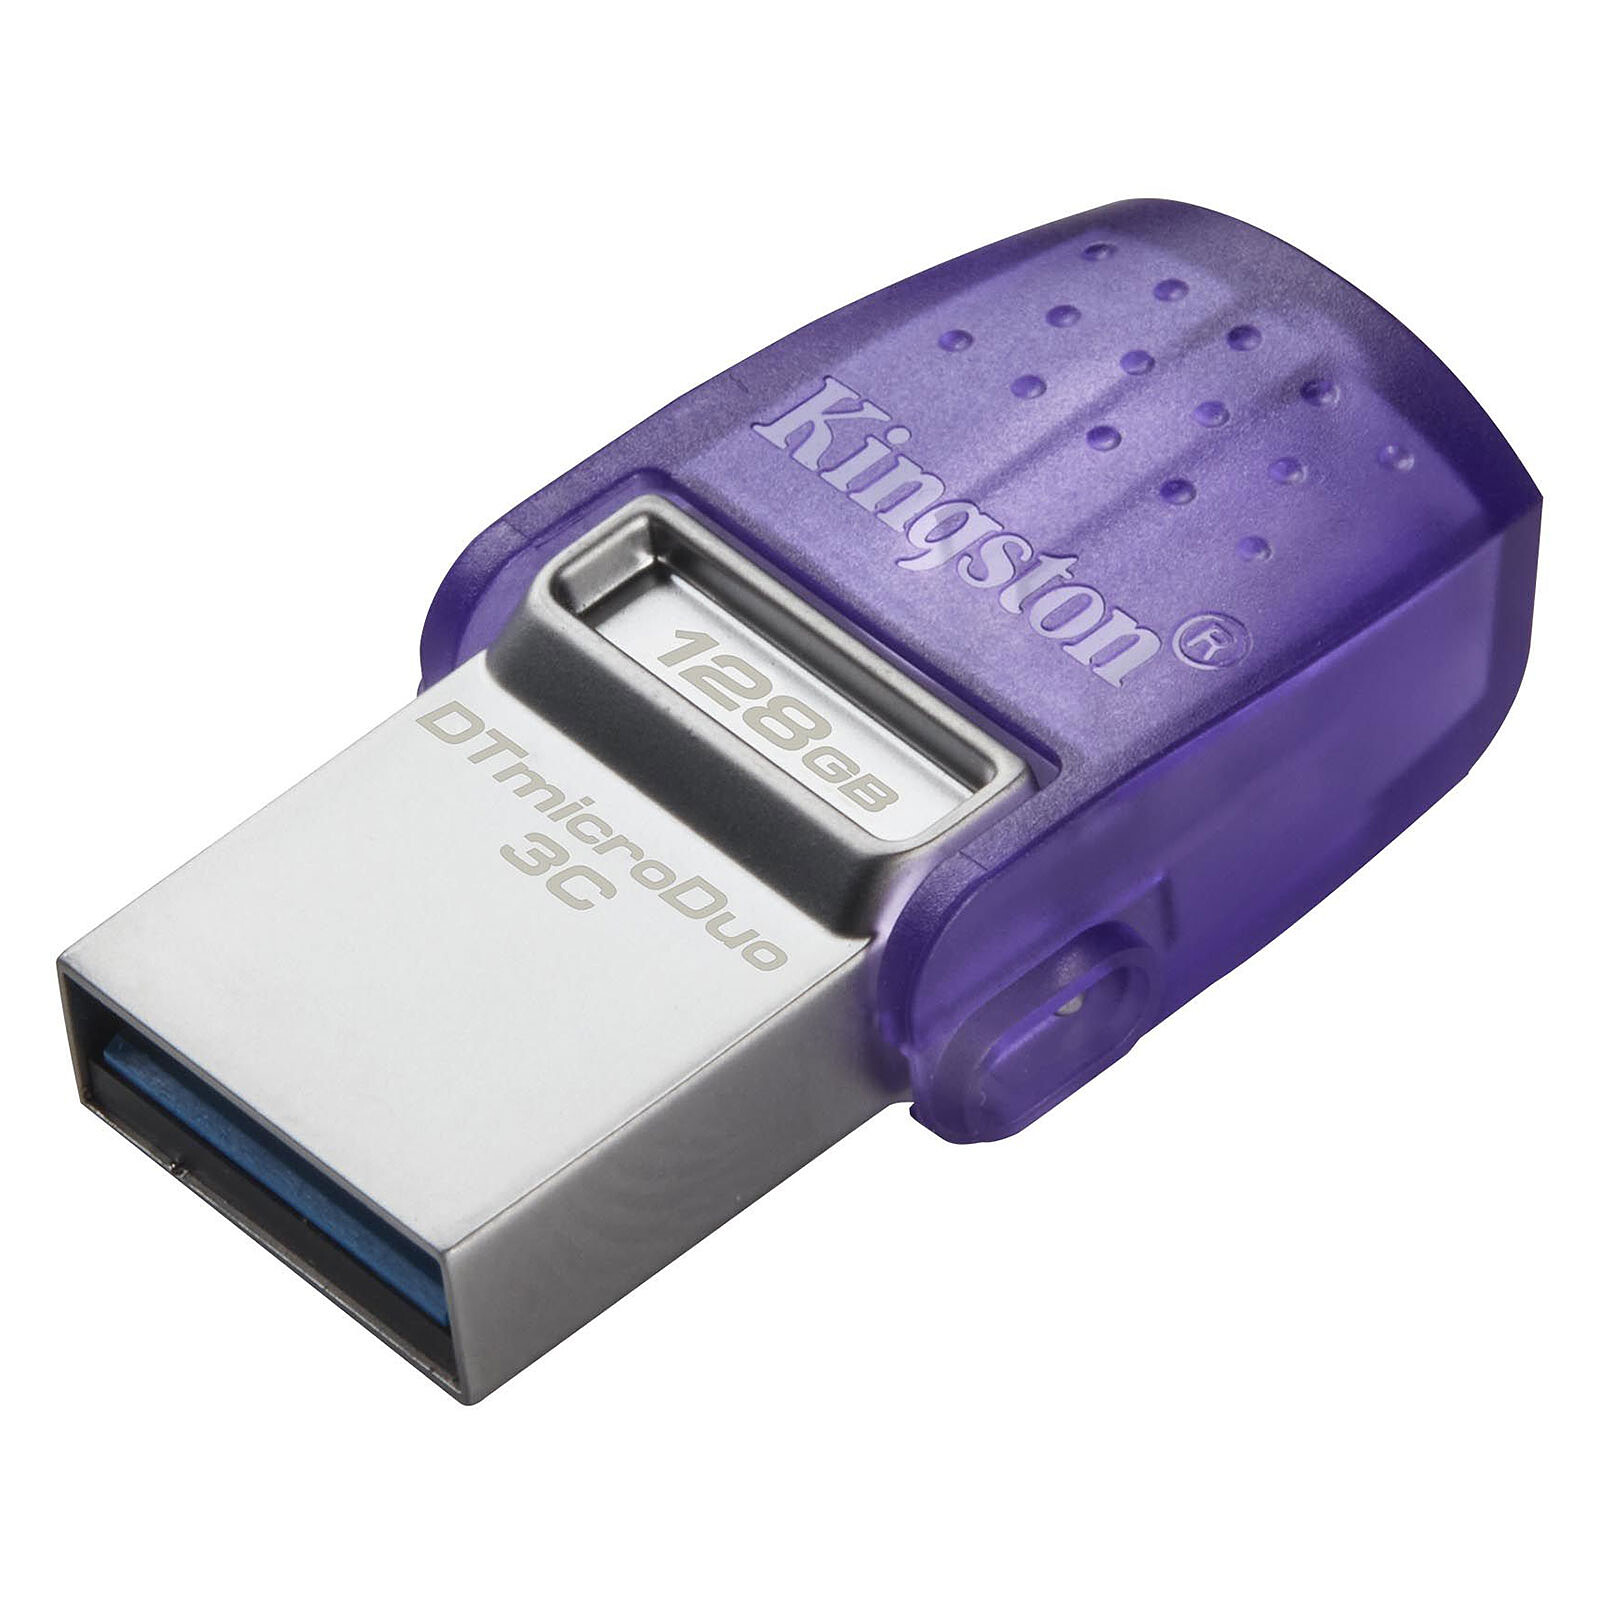 SanDisk Ultra Luxe 128 Go - Clé USB - LDLC